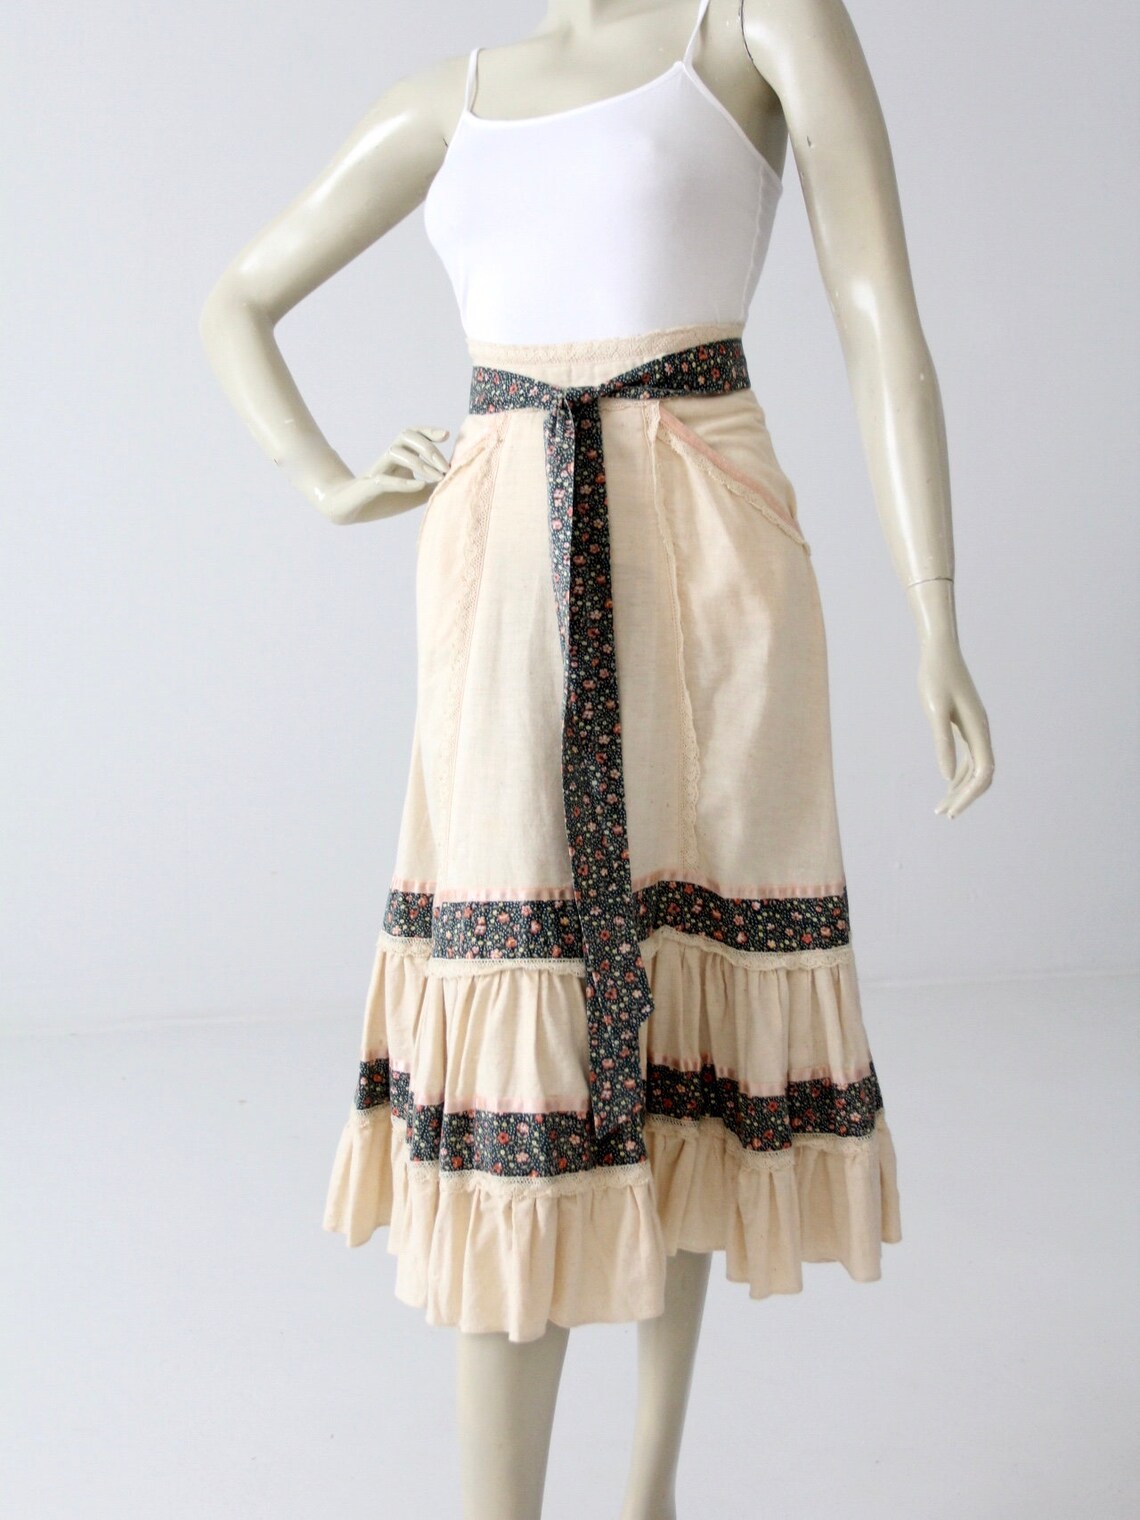 Gunne Sax Skirt Vintage Jessica's Gunnies Skirt 1970s | Etsy